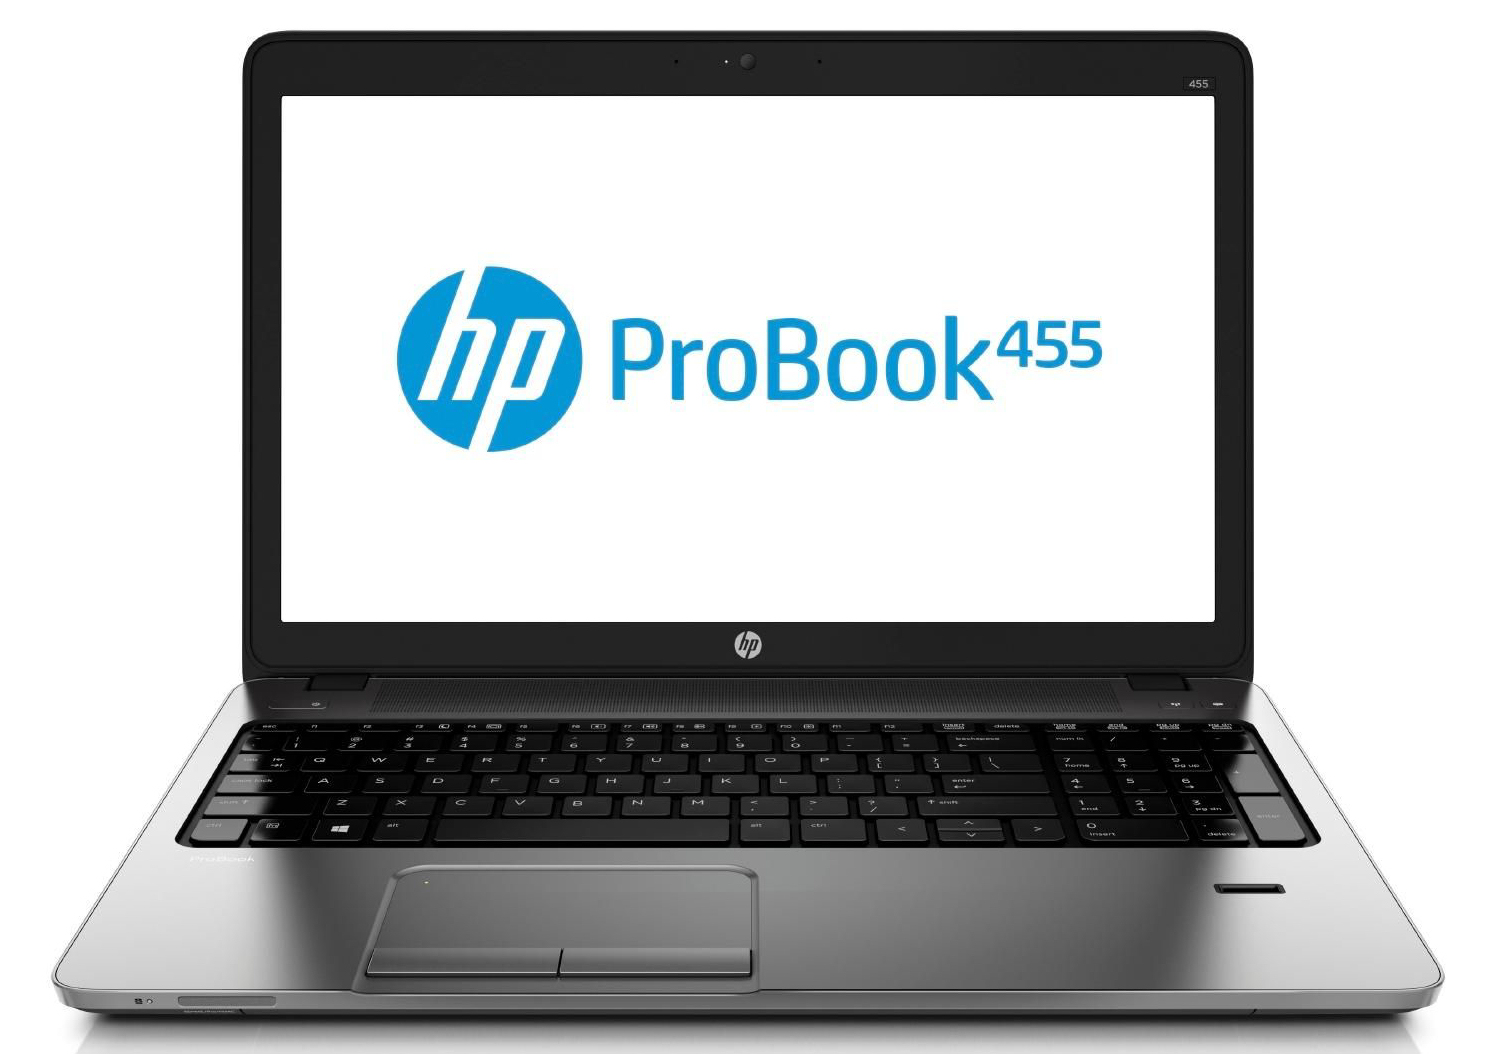 HP ProBook 455 Series - Notebookcheck.net External Reviews